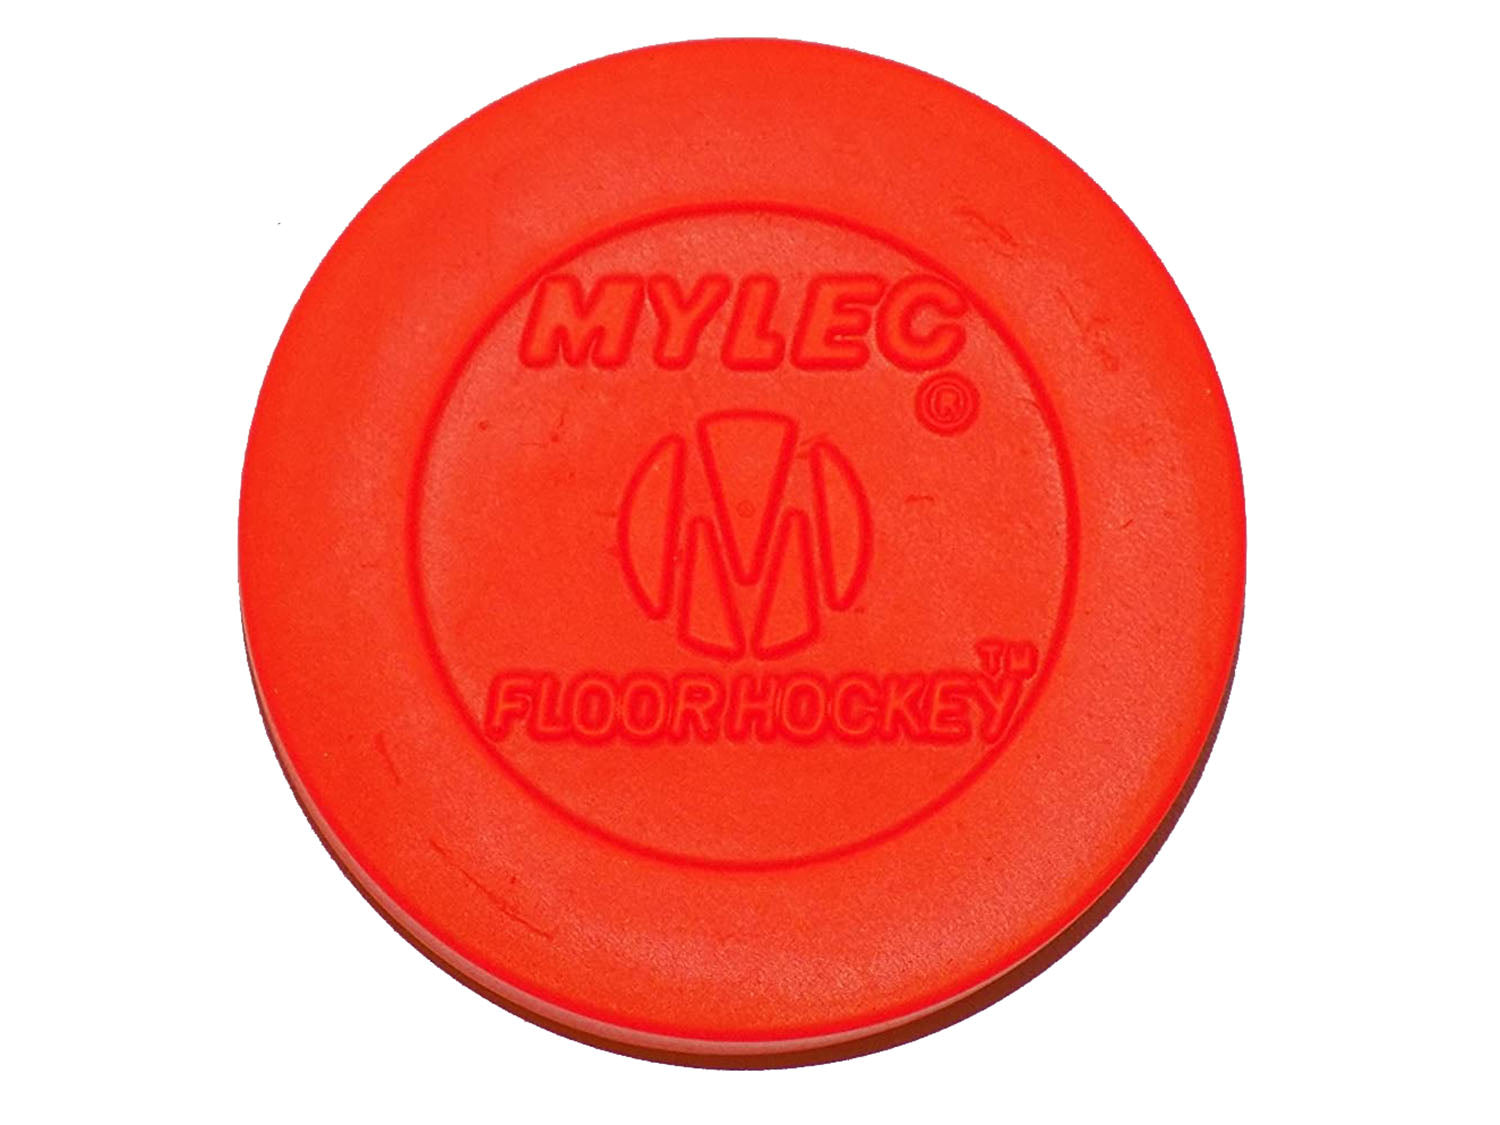 Mylec Floor Hockey Indoor/Outdoor Orange Puck - 6 Pack - Pro-Distributing